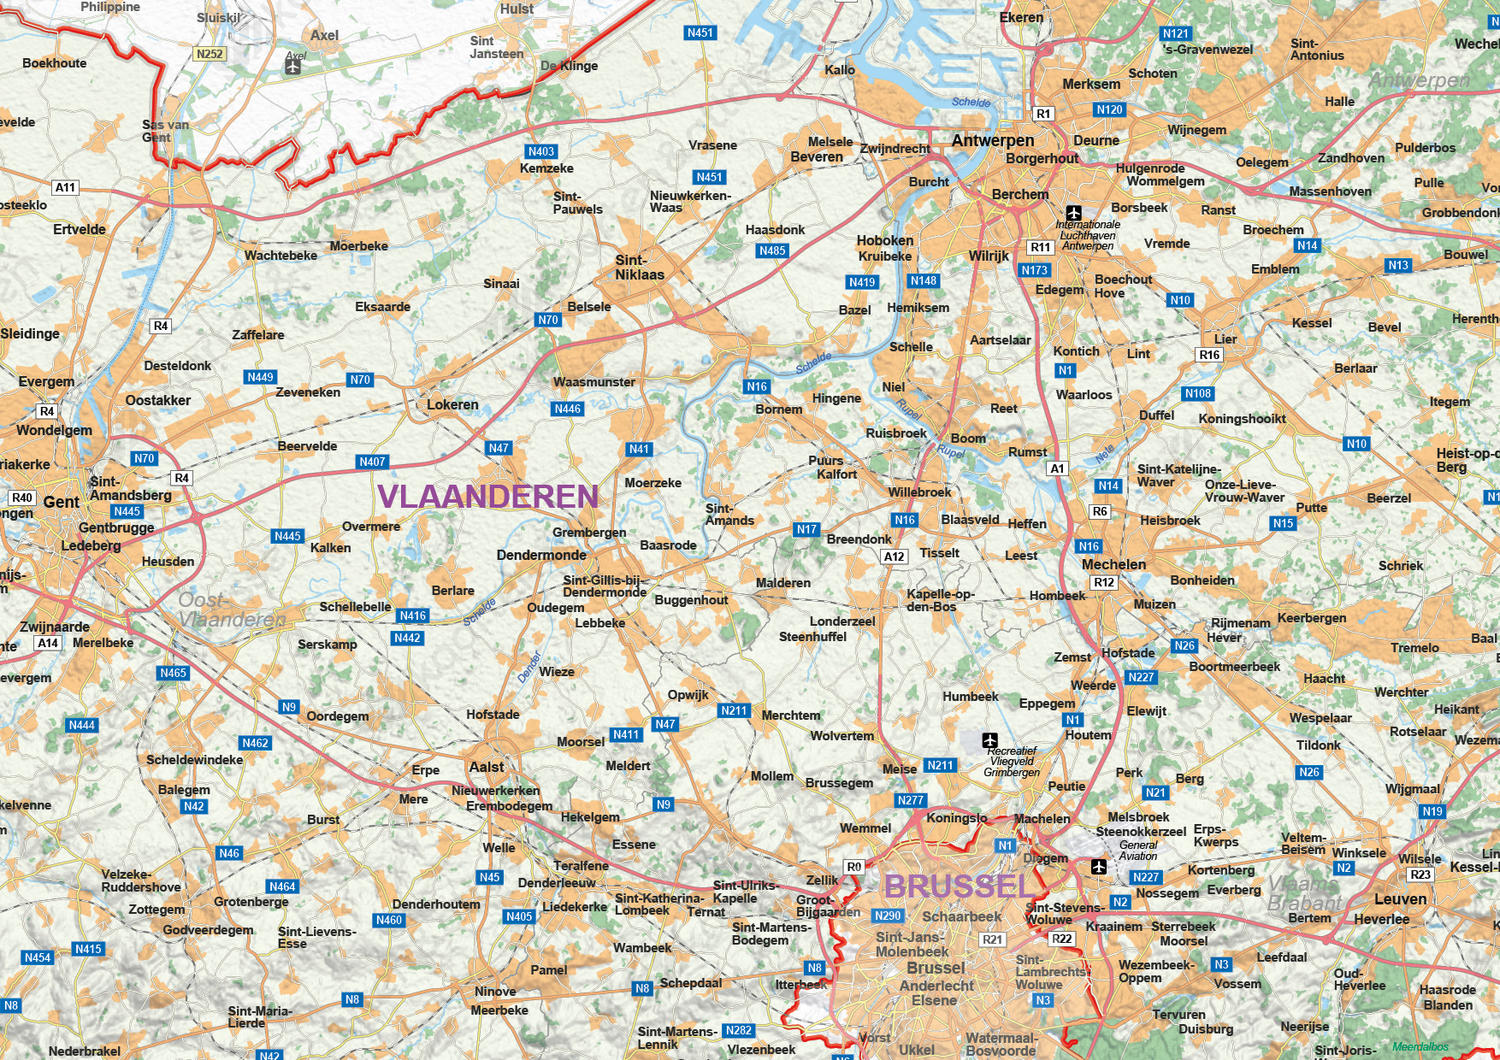 Vlaanderen Digitale Topografische Kaart